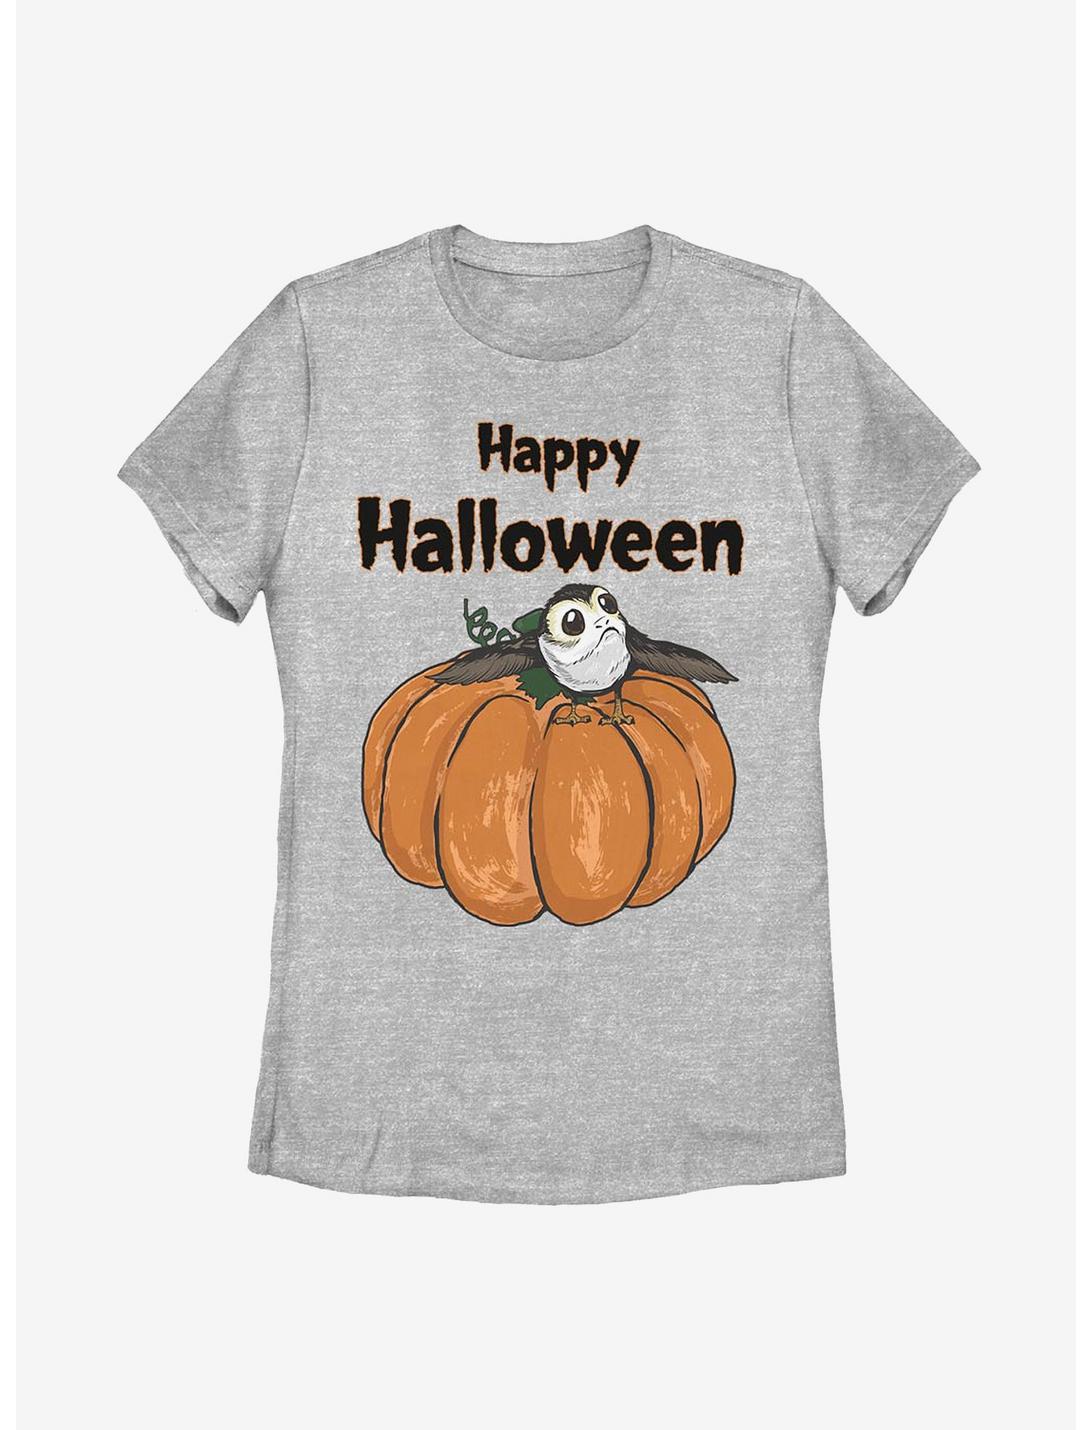 Star Wars Porg On A Pumpkin Womens T-Shirt, ATH HTR, hi-res